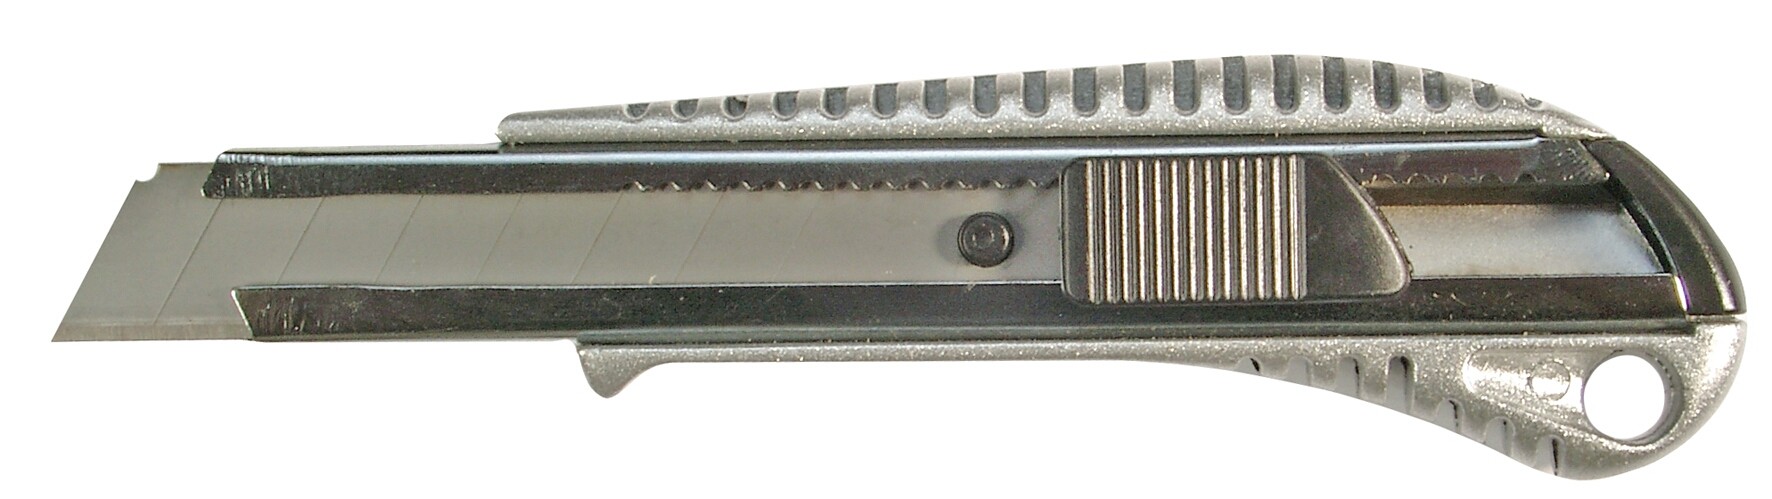 Cutter, Cuerpo Diecast de ZINC, cuchilla de 18 mm